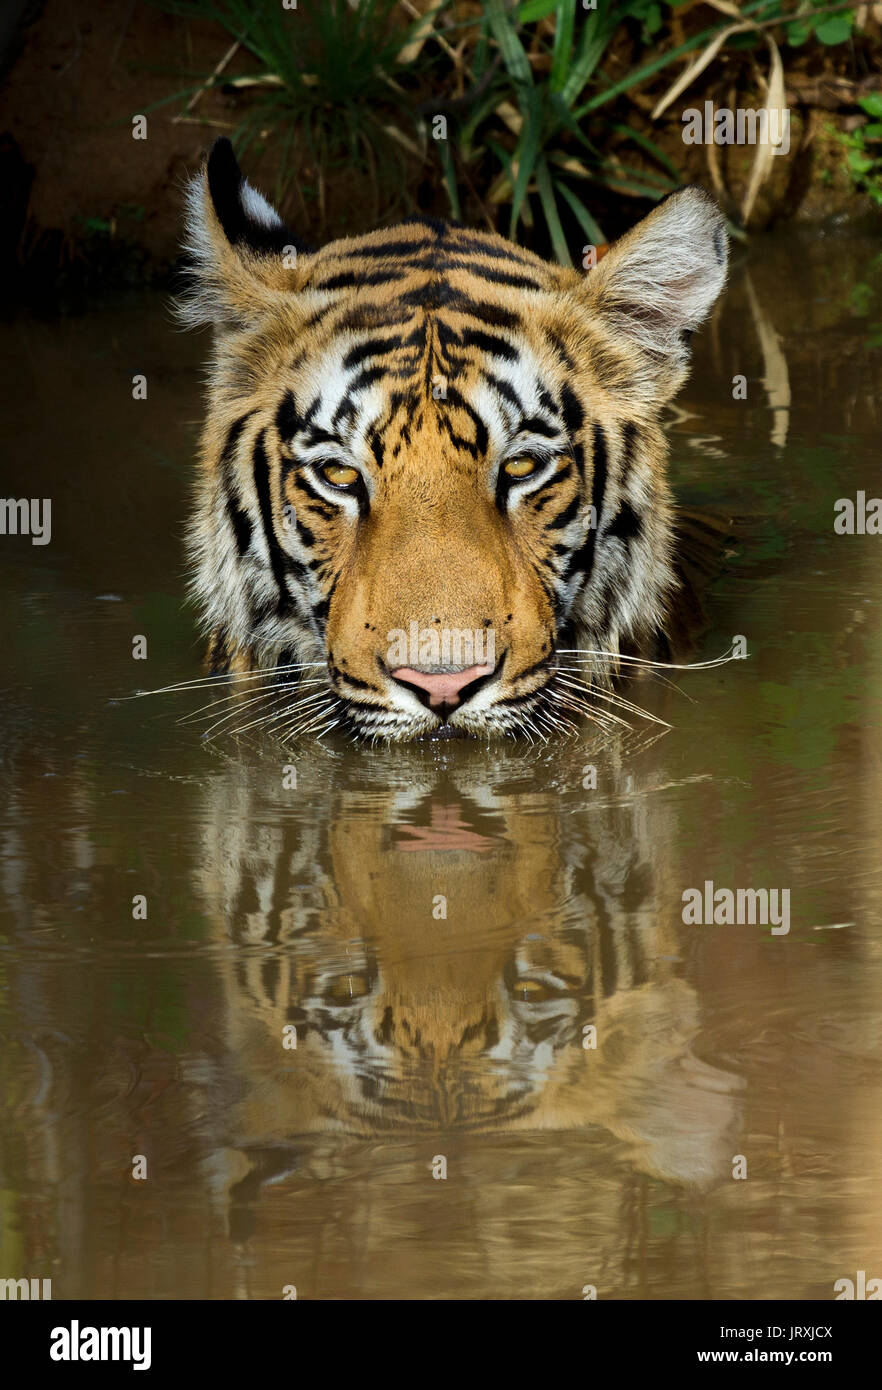 Royal Bengal Tiger or Panthera tigris tigris or Indian Tiger in water with reflection at Tadoba National Park, Maharashtra, India Stock Photo